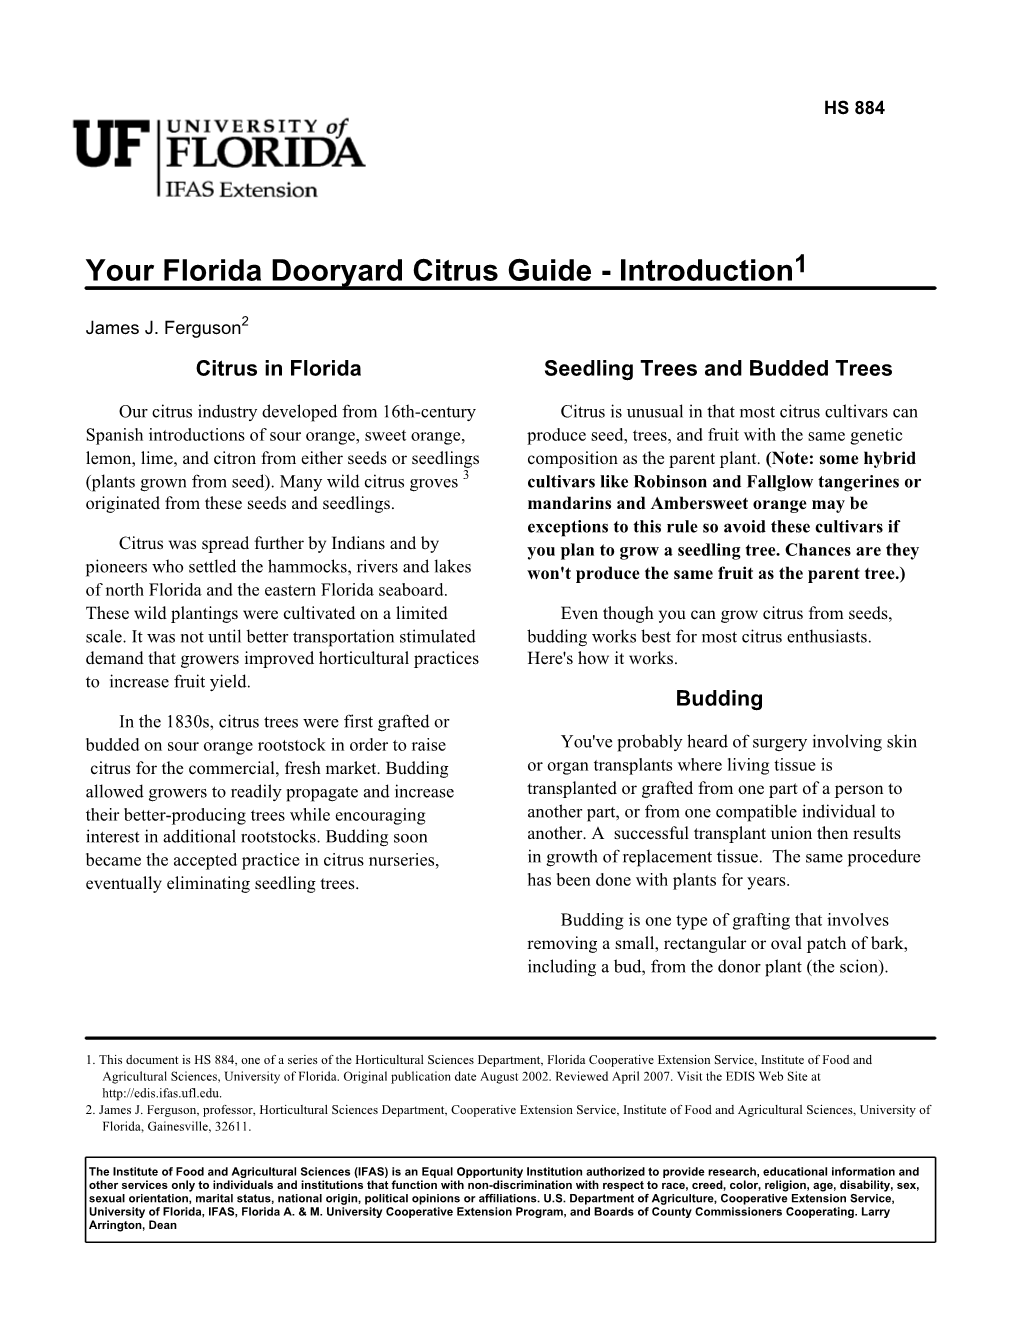 Your Florida Dooryard Citrus Guide - Introduction1